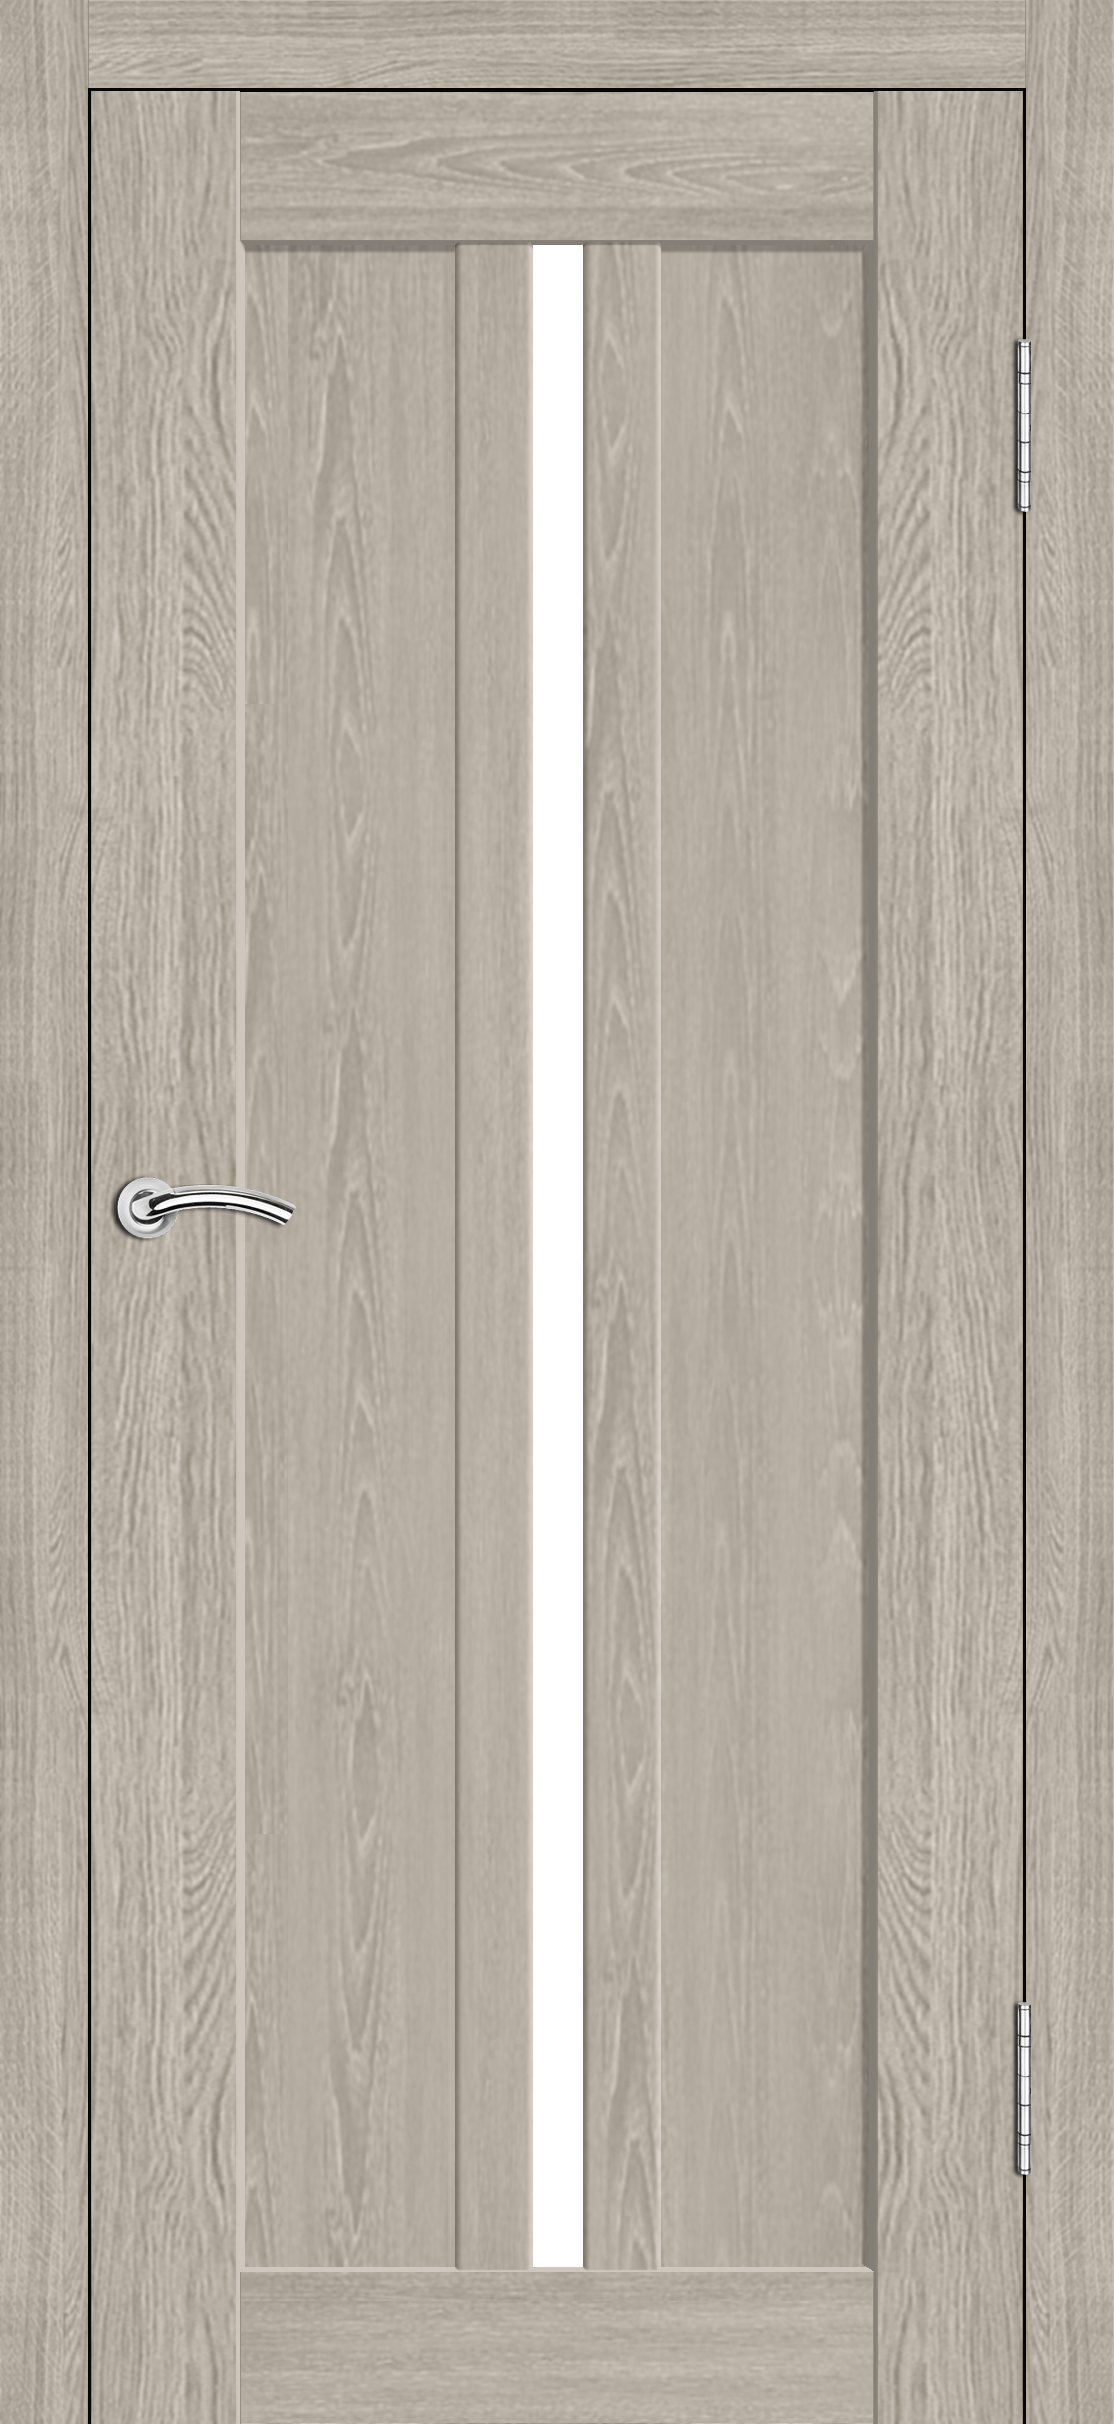 Межкомнатная дверь «Сириус». Вид отделки Дуб белый Cтандартный наличник